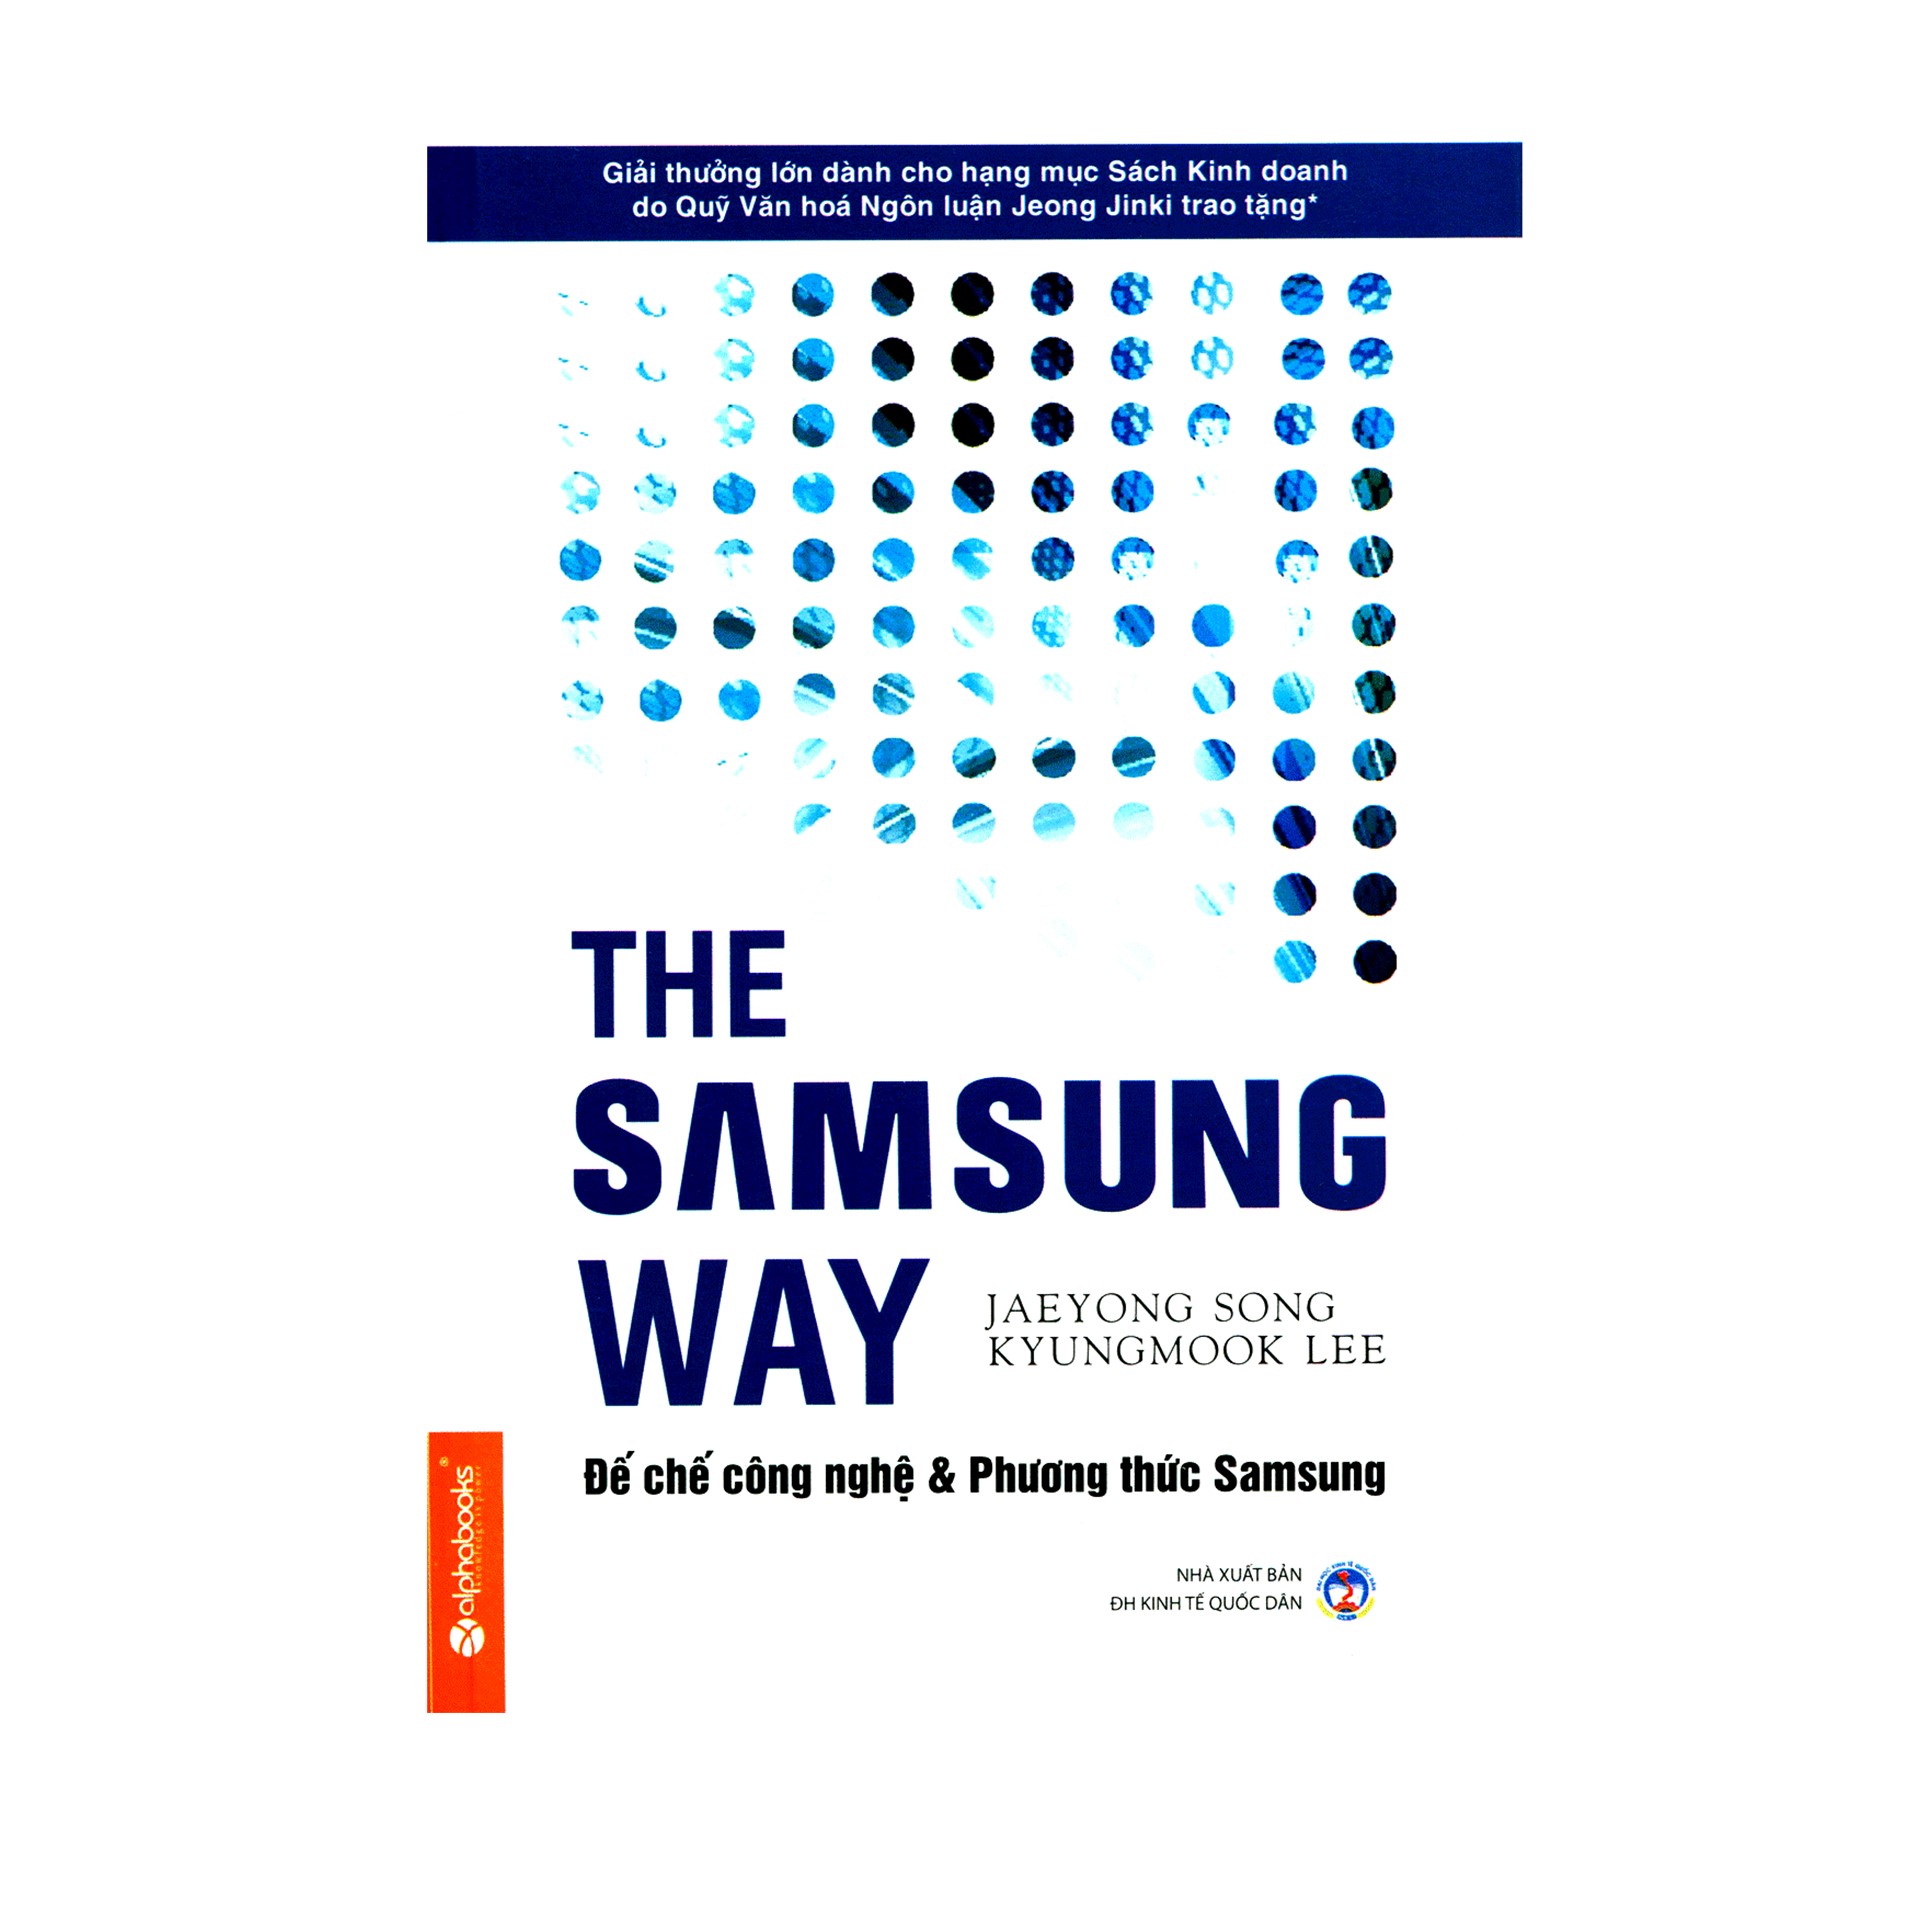 Combo Sách Kinh Tế Hay : Bộ Ba Xuất Chúng Hàn Quốc + The Samsung Way - Đế Chế Công Nghệ Và Phương Thức Samsung